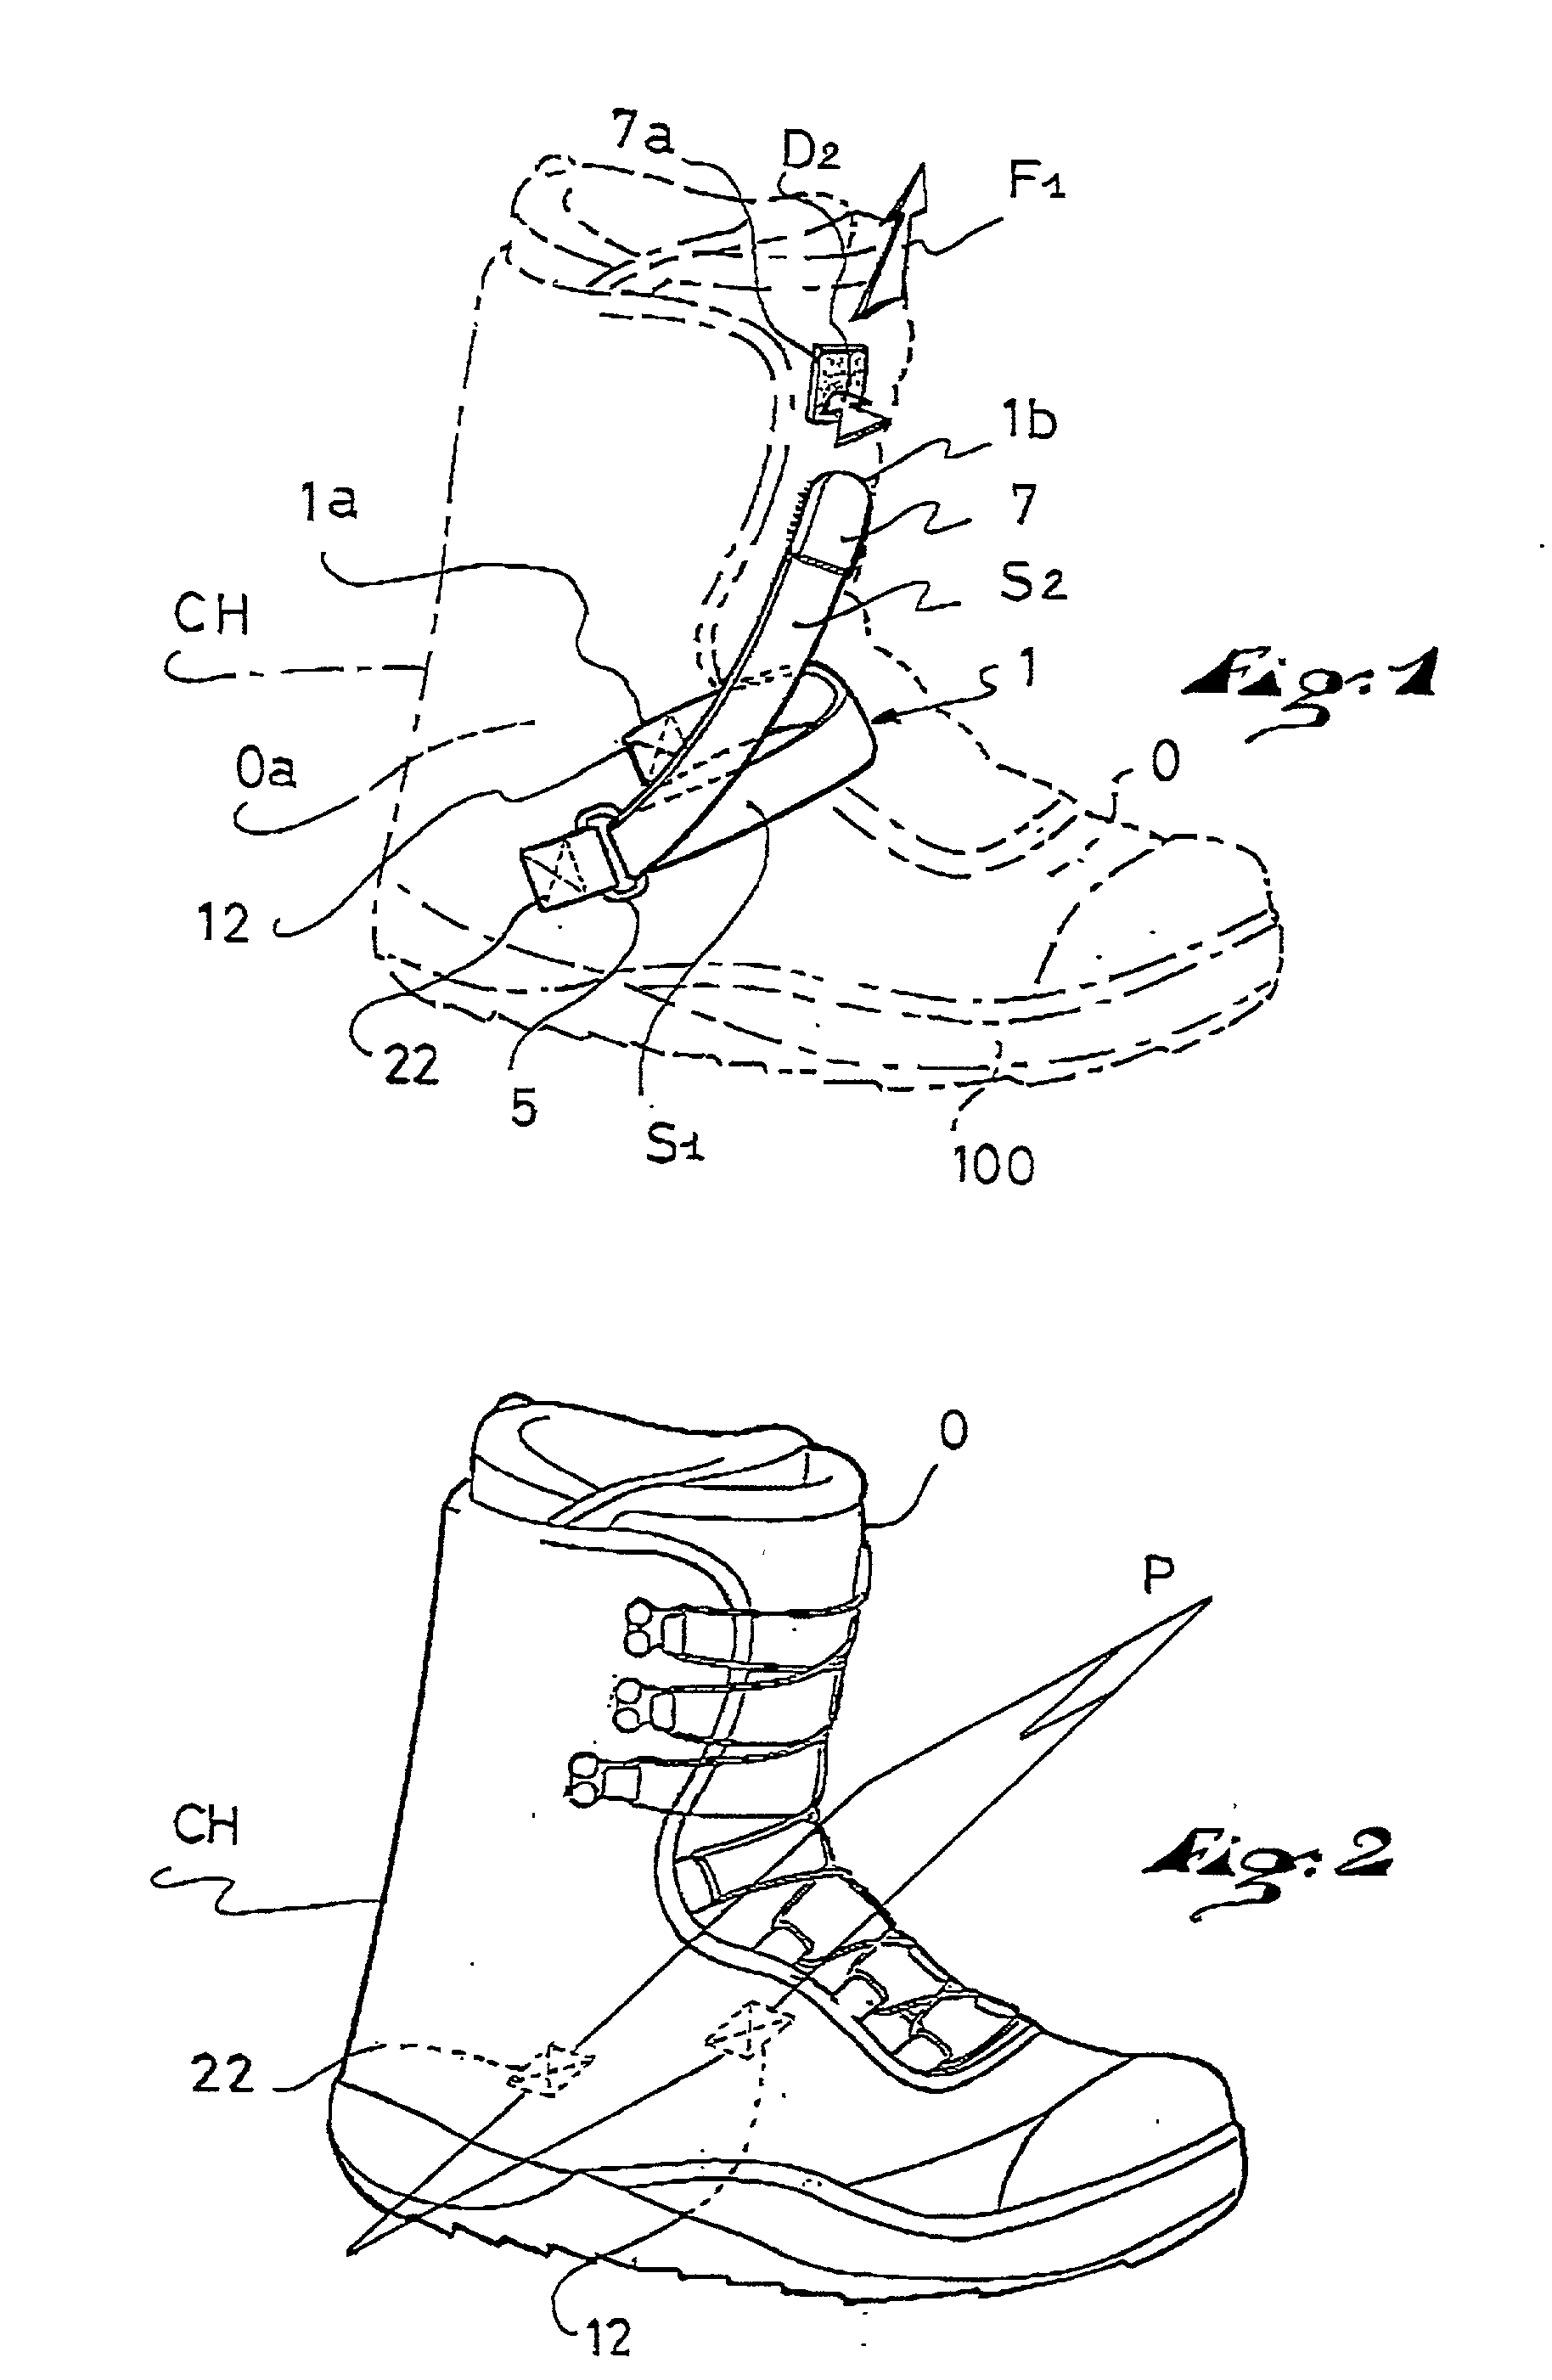 Innerl tightening mechanism for footwear